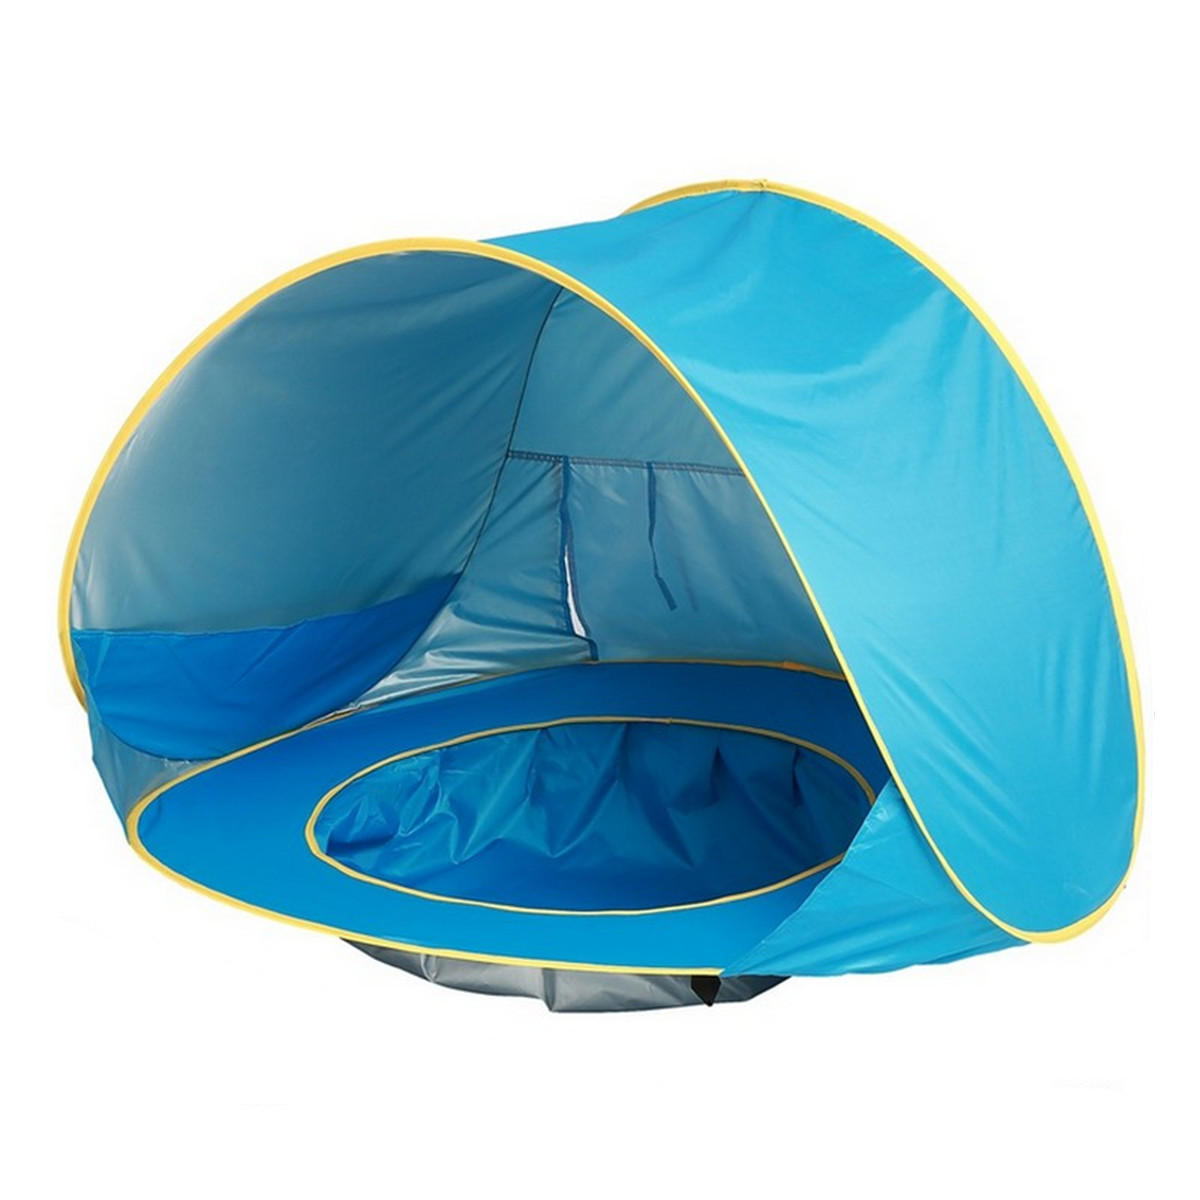 Tente de plage pour bébé avec protection UV et piscine, imperméable, facile à installer, pour le camping en plein air et se protéger du soleil.